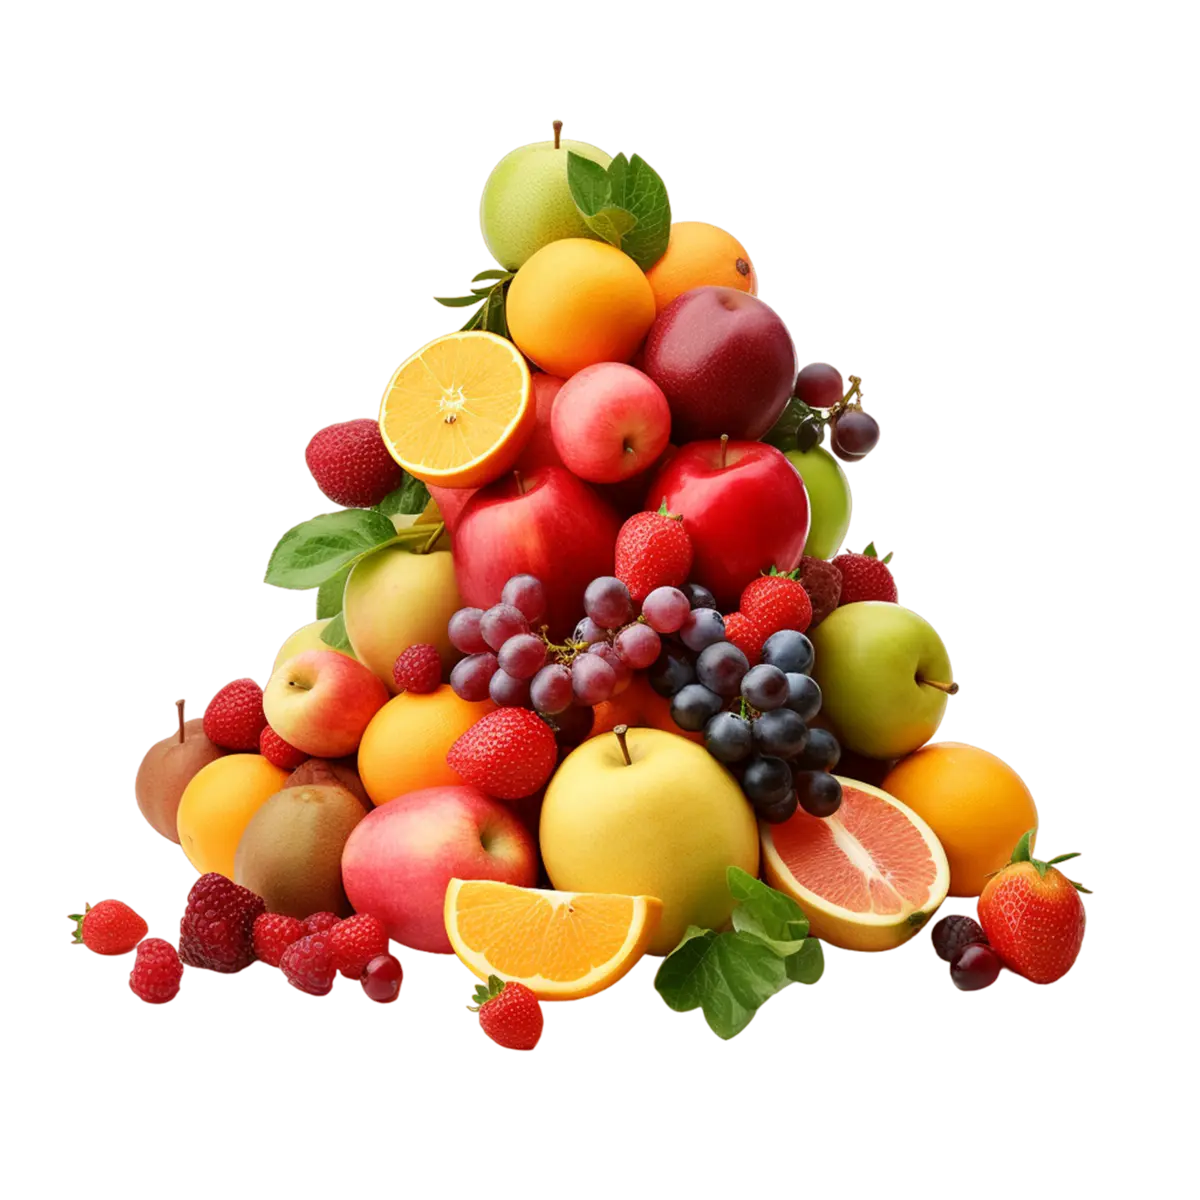 Fruits / 果物